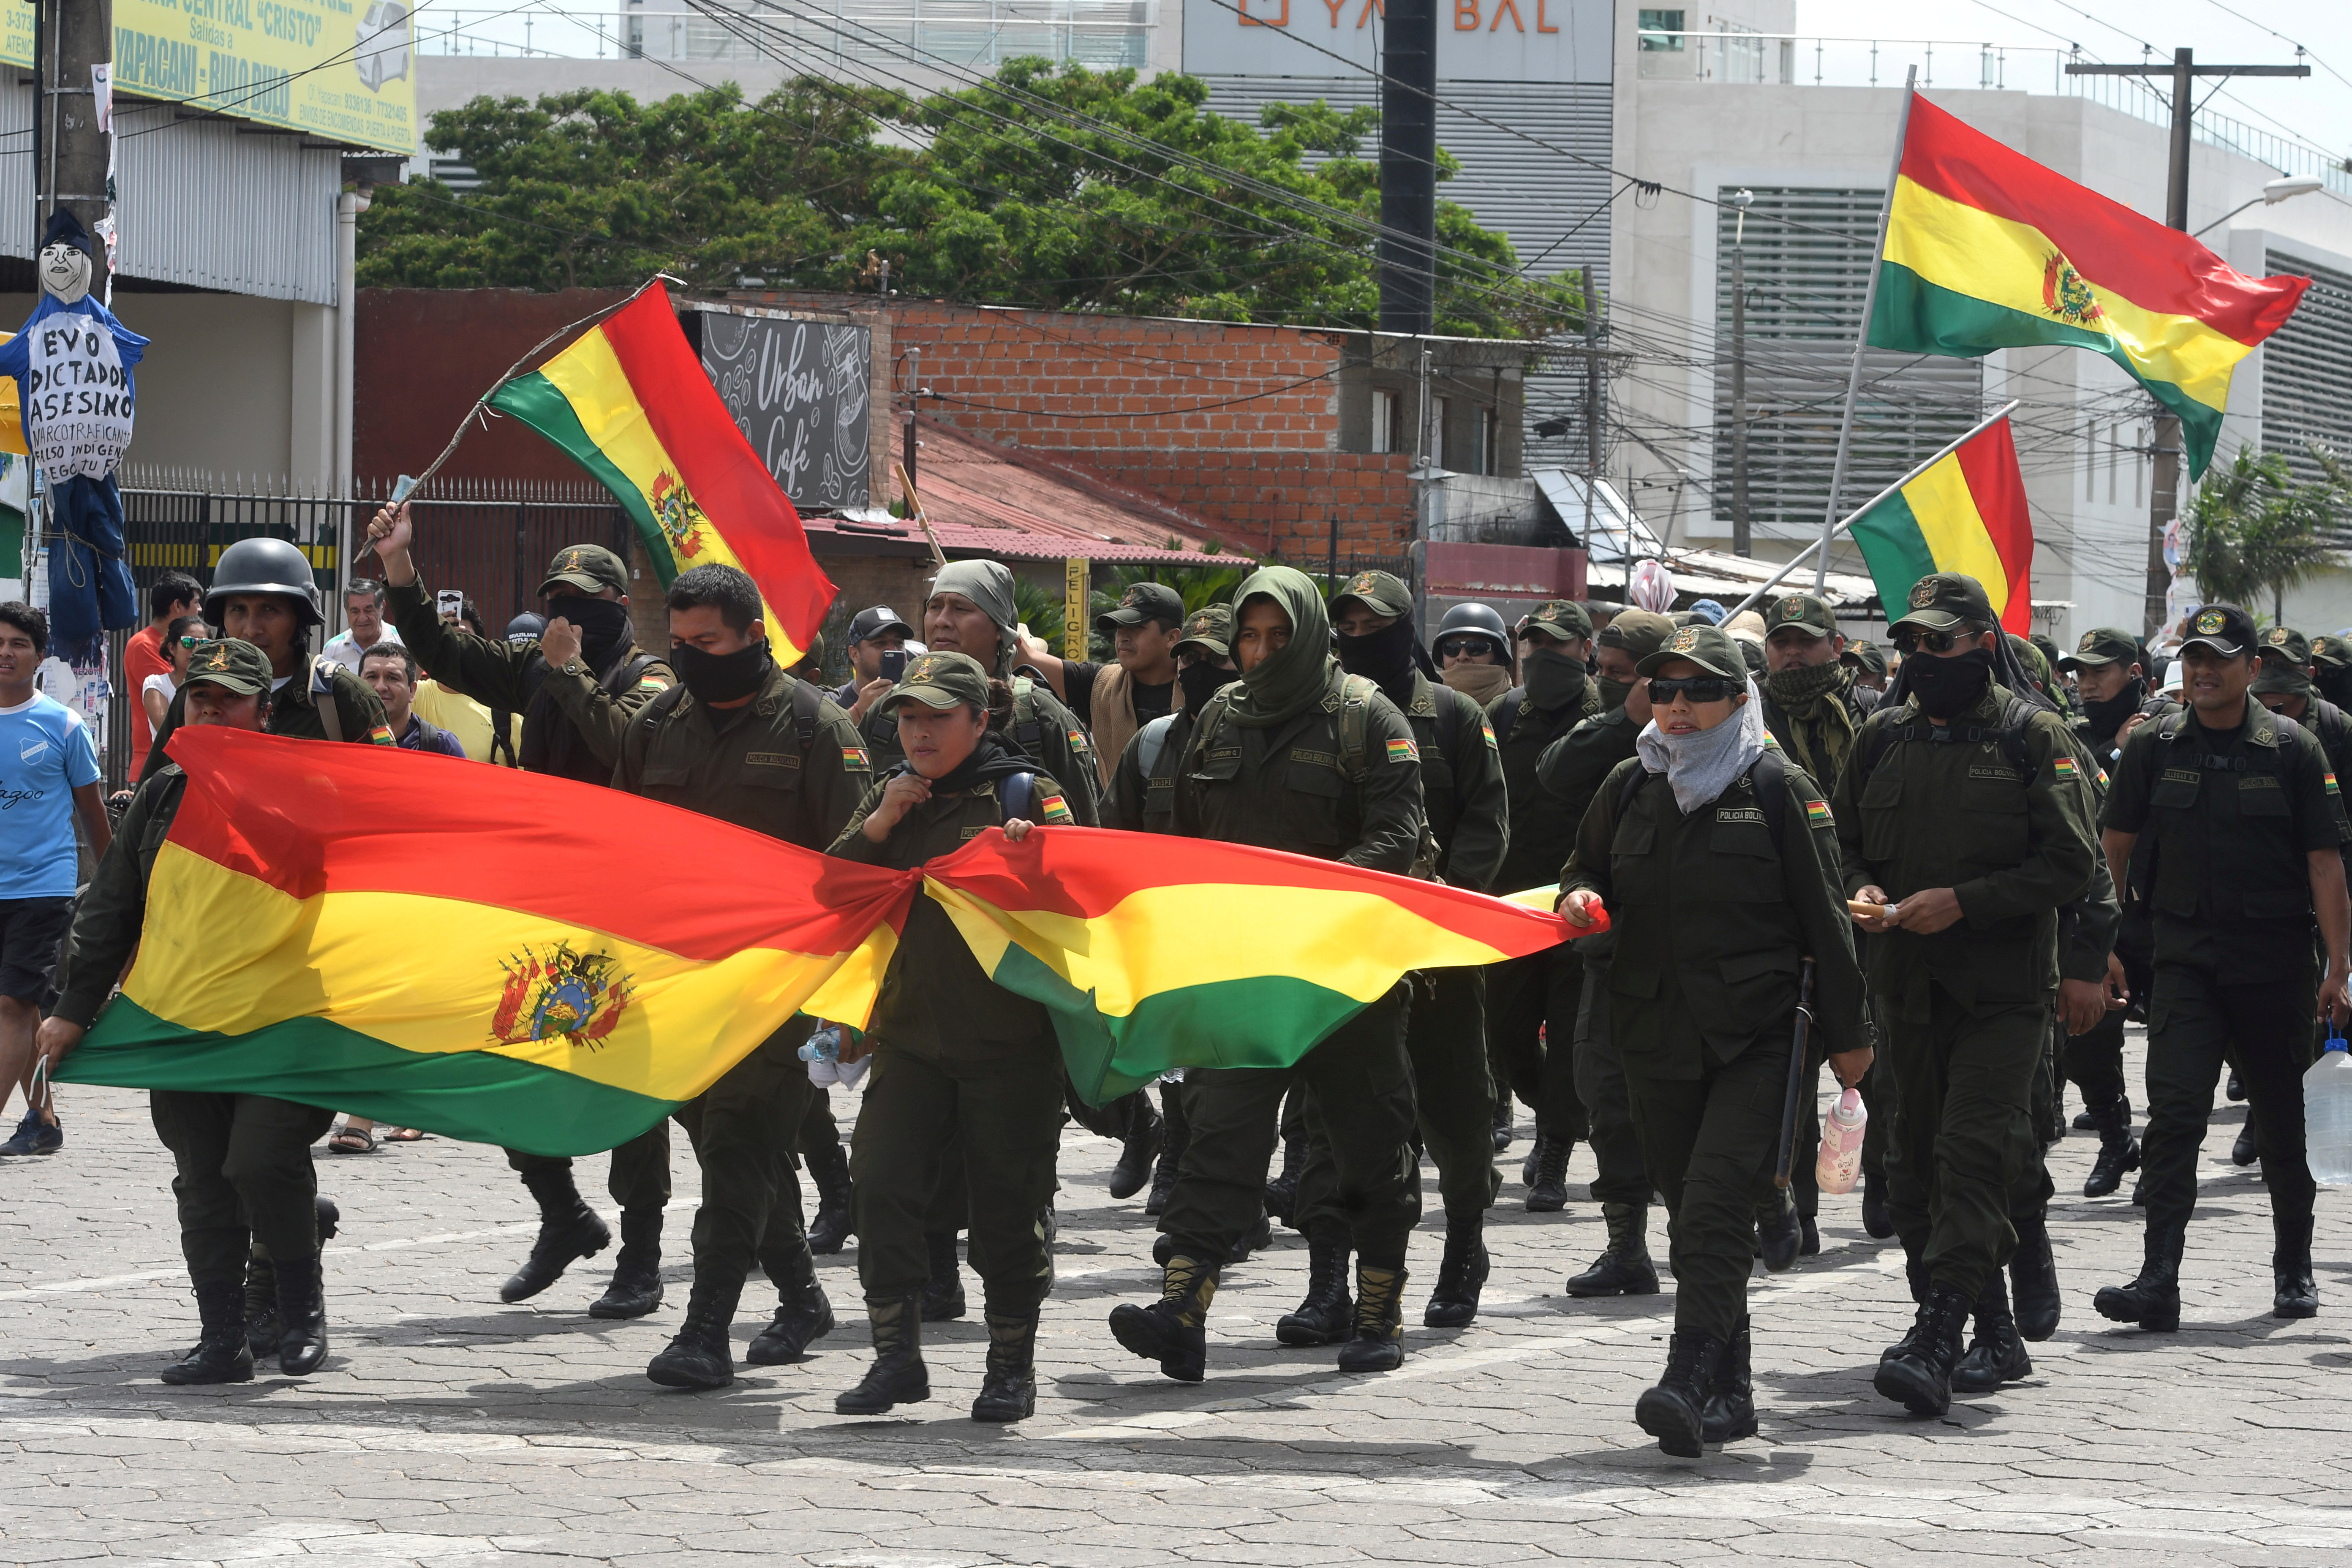 Evo Morales en la cuerda floja en la peor crisis de su gobierno en Bolivia